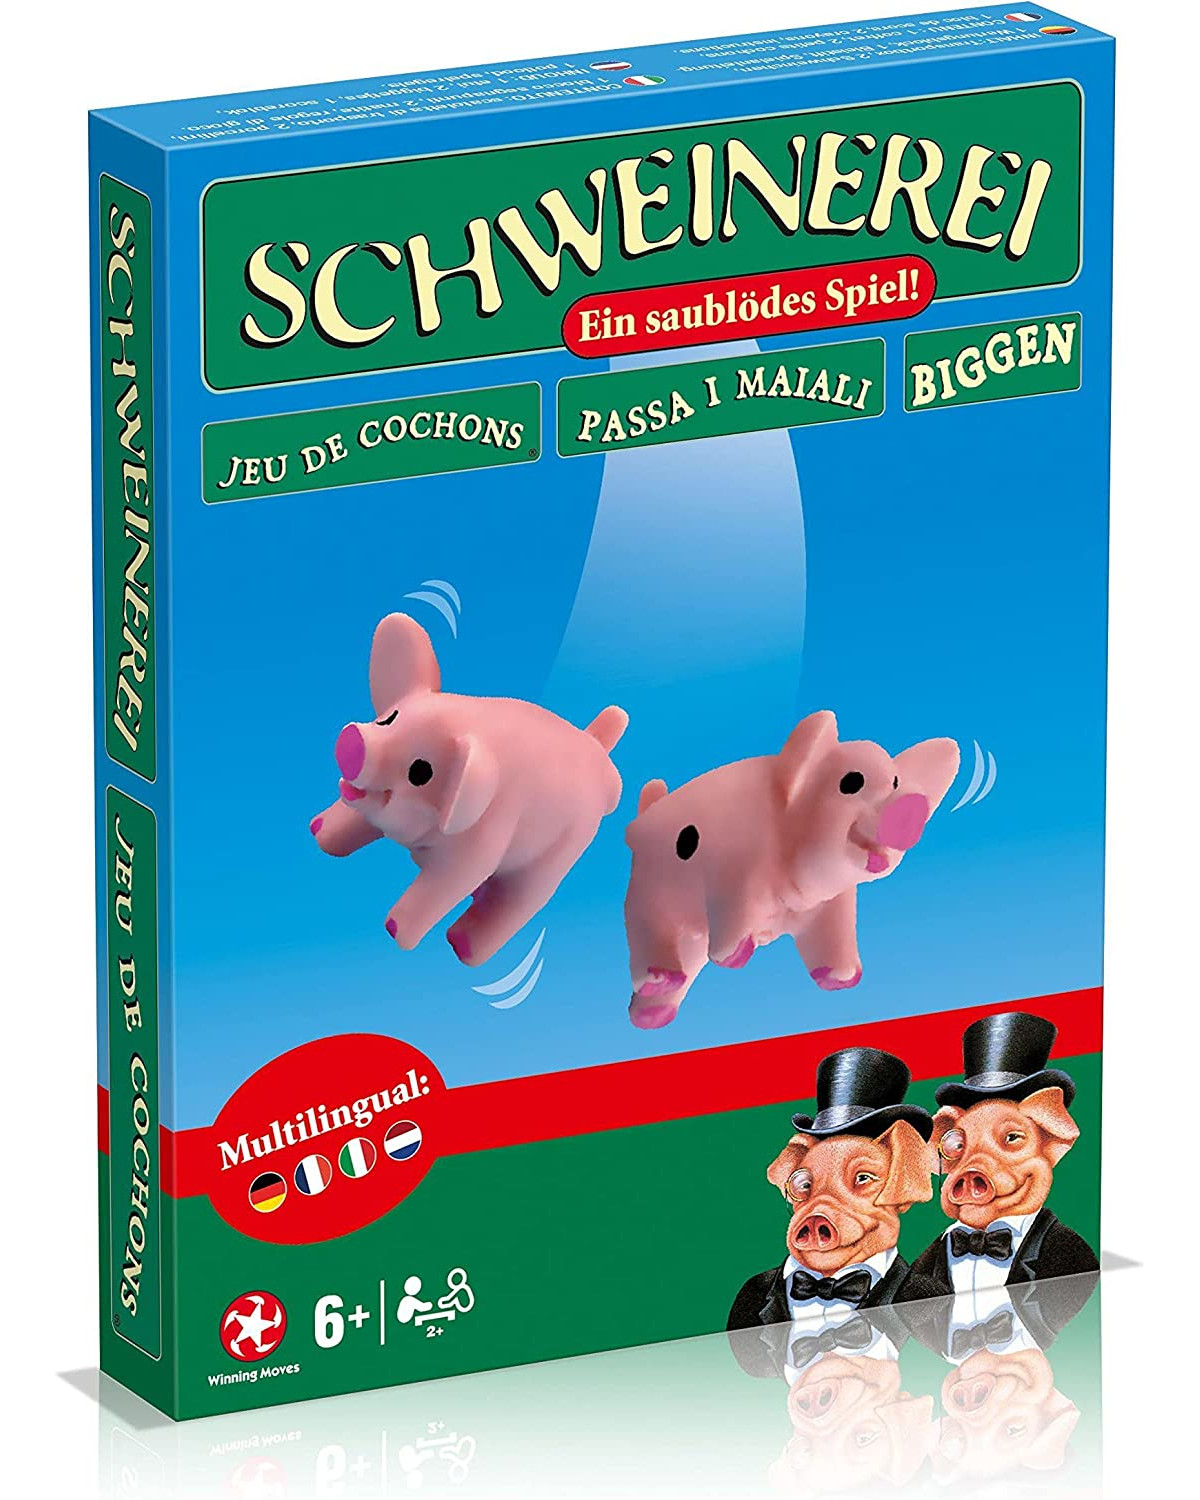 Schweinerei (DE, IT, NL, FR) (neue Box)